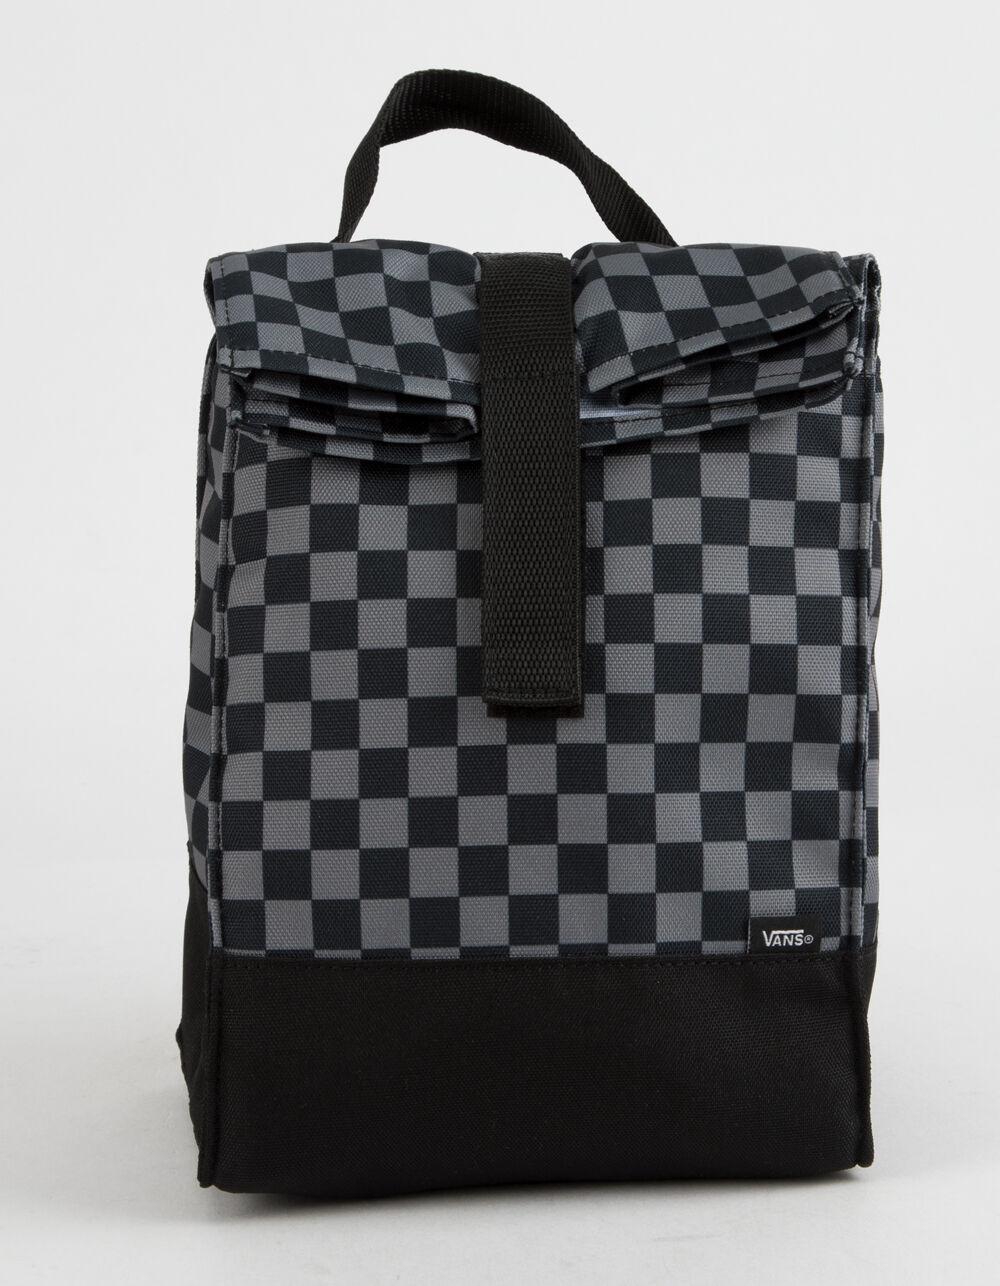 Vans Mow Black Checkerboard Lunch Bag in Black - Lyst